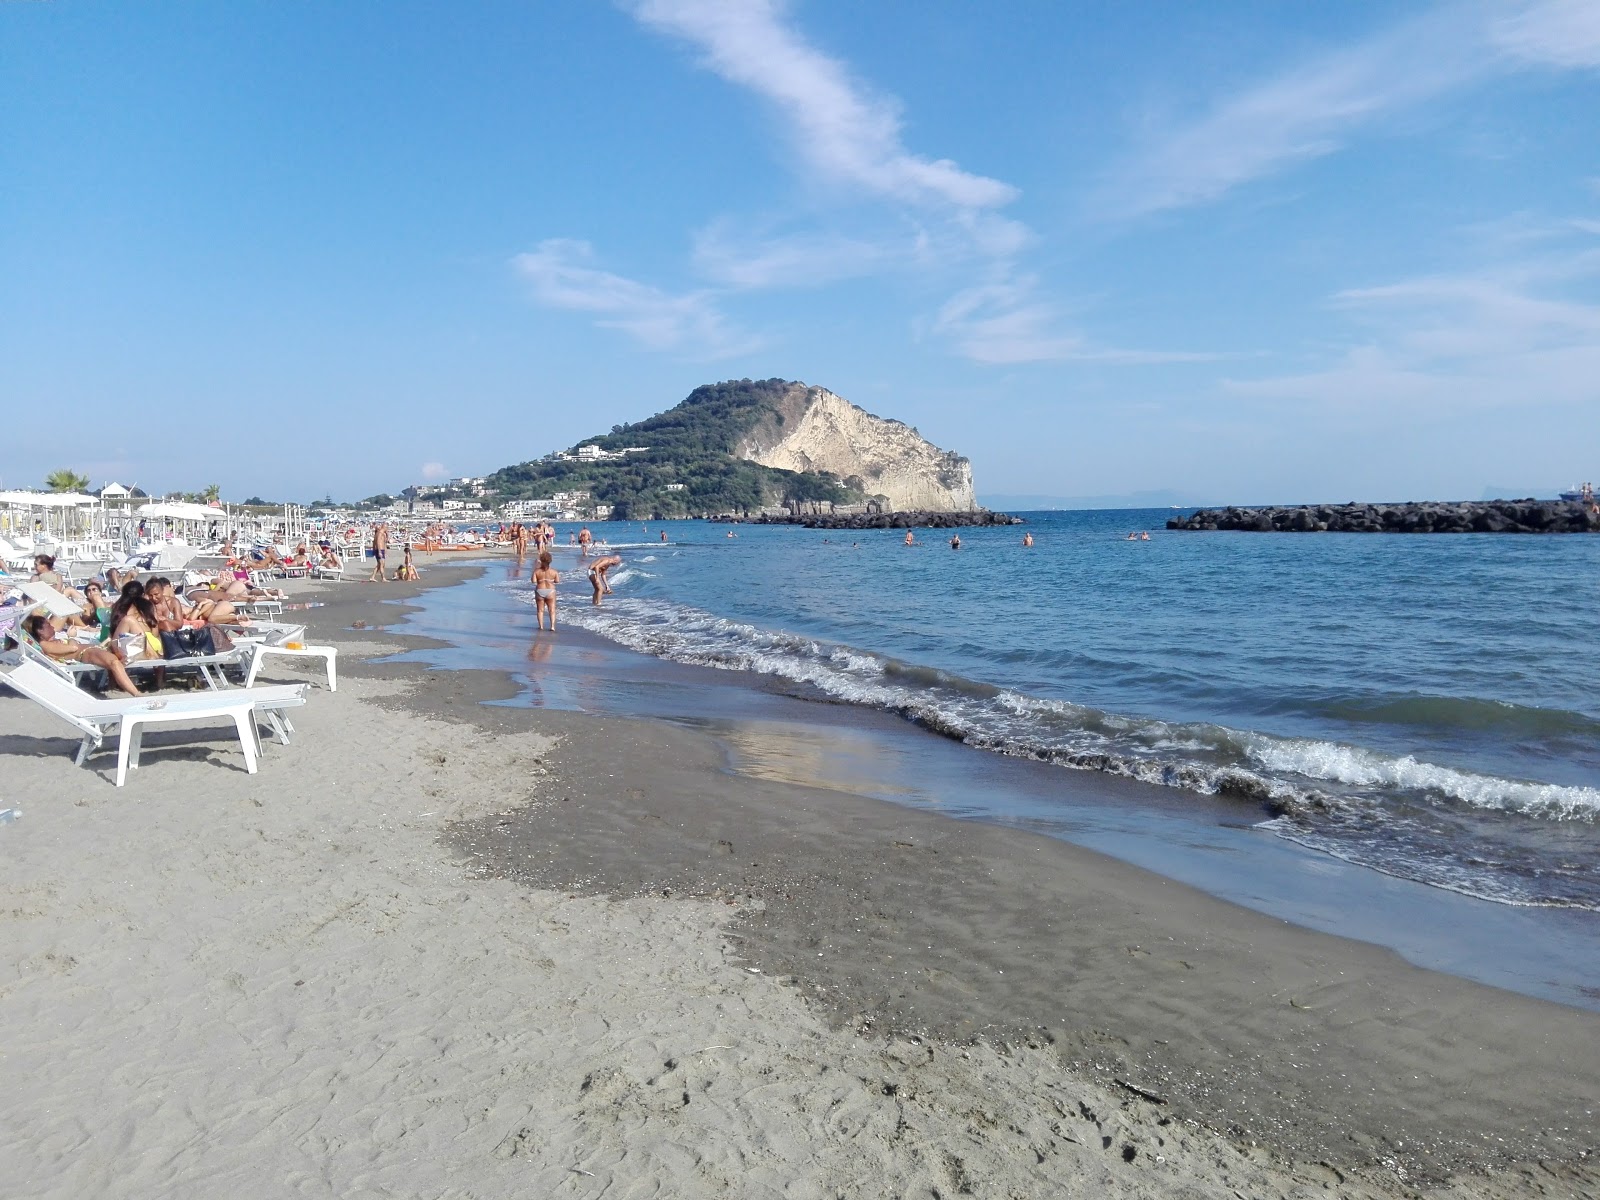 Bacoli beach'in fotoğrafı plaj tatil beldesi alanı